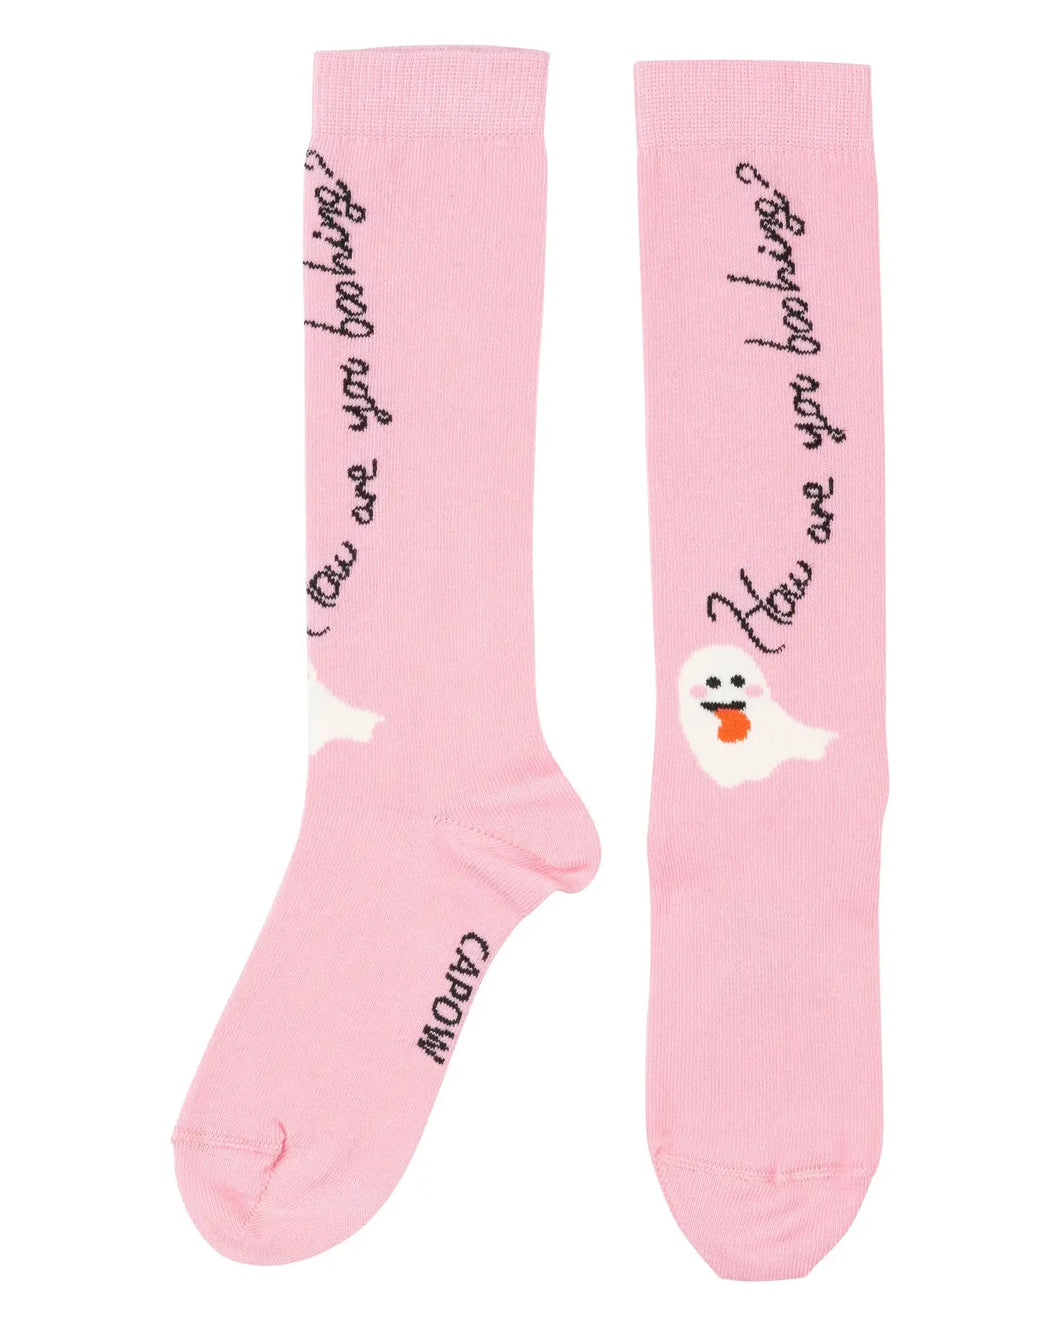 Boooh Knee Socks (Baby/Toddlers/Kids)